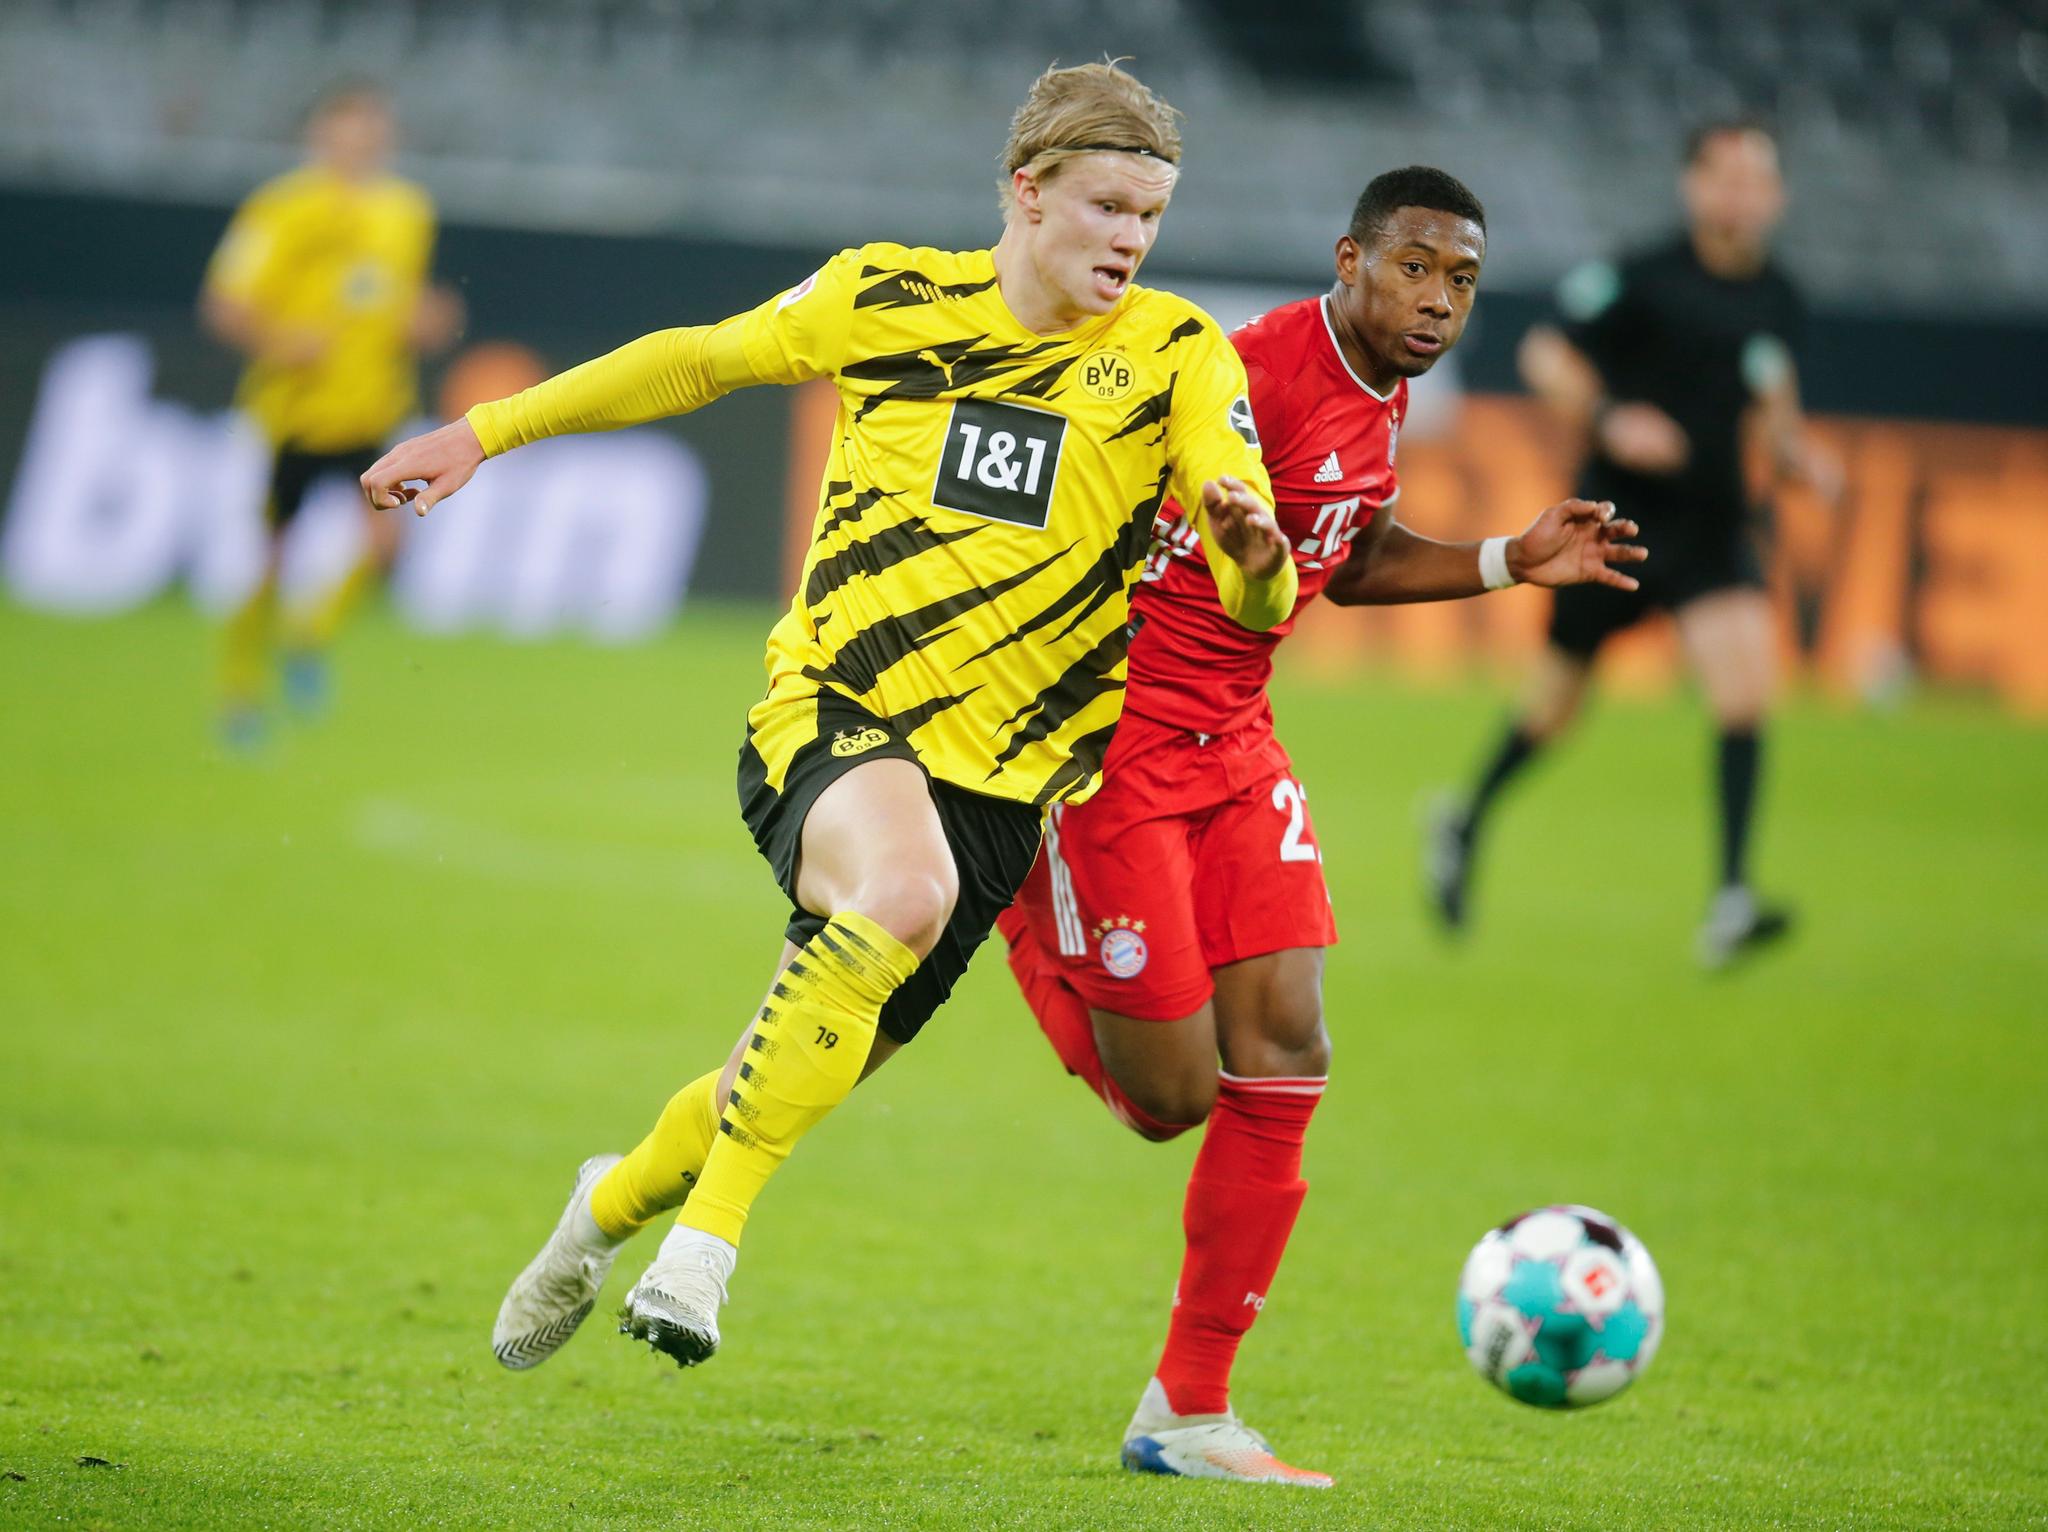 KAMP LØRDAG: Erling Braut Haaland (t.v) og Dortmund møter Hertha Berlin lørdag kveld.